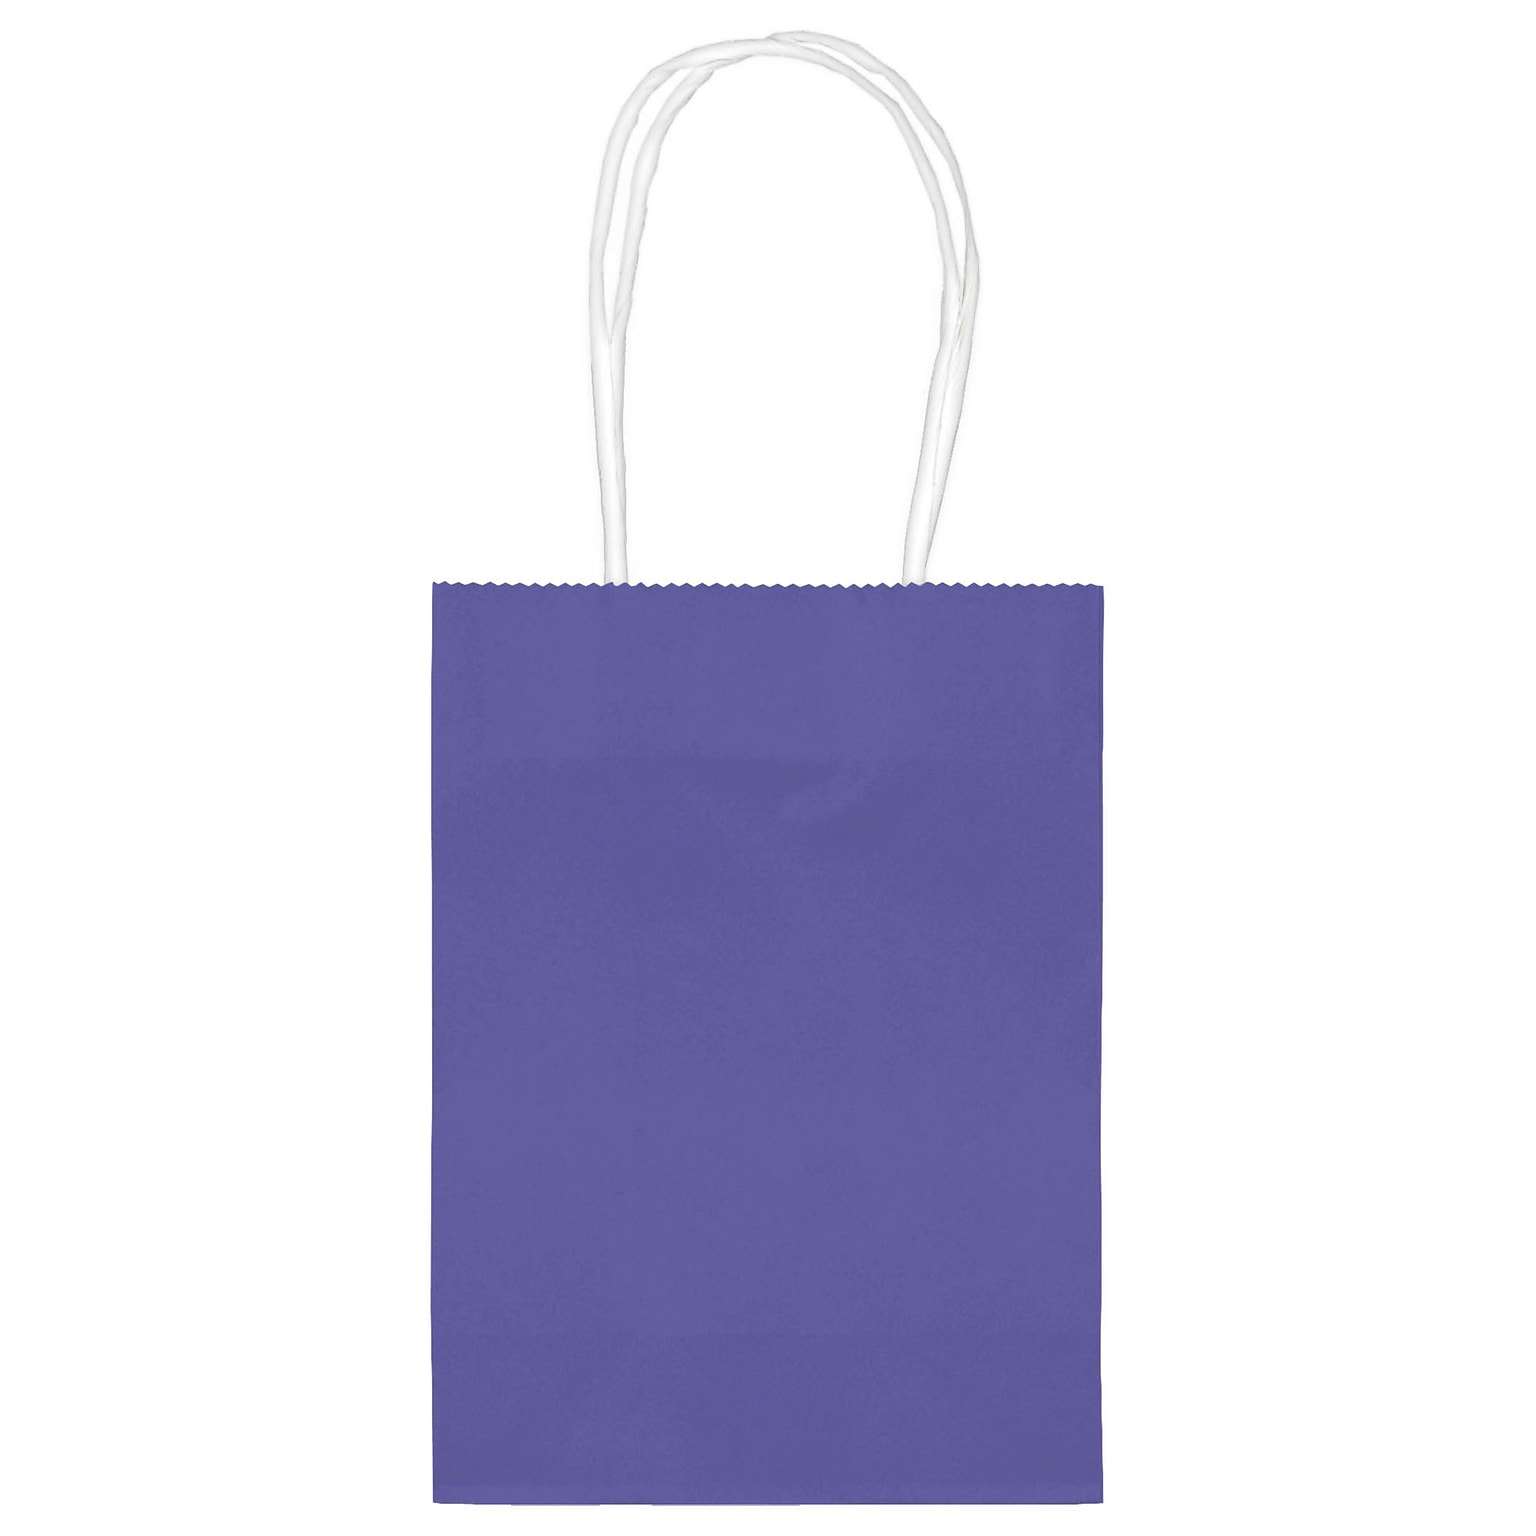 Amscan Kraft Paper Bag, 5 x 4, New Purple, 48 Bags/Pack (160059.106)